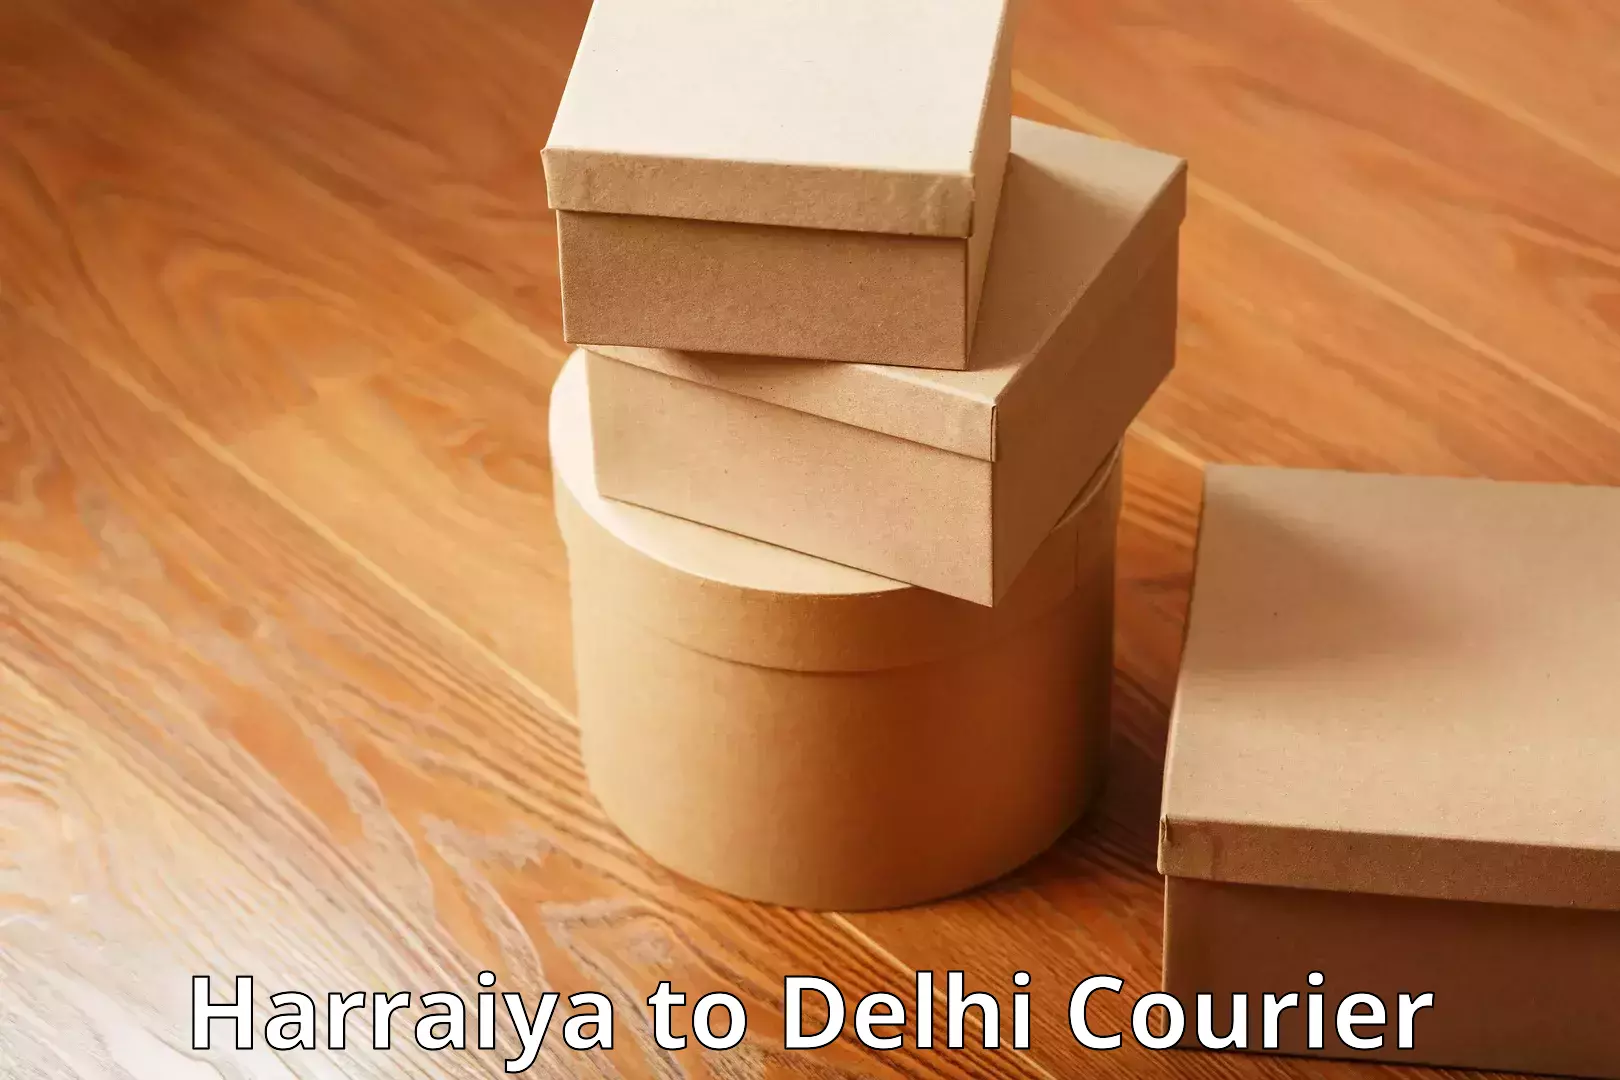 Baggage shipping quotes Harraiya to Delhi